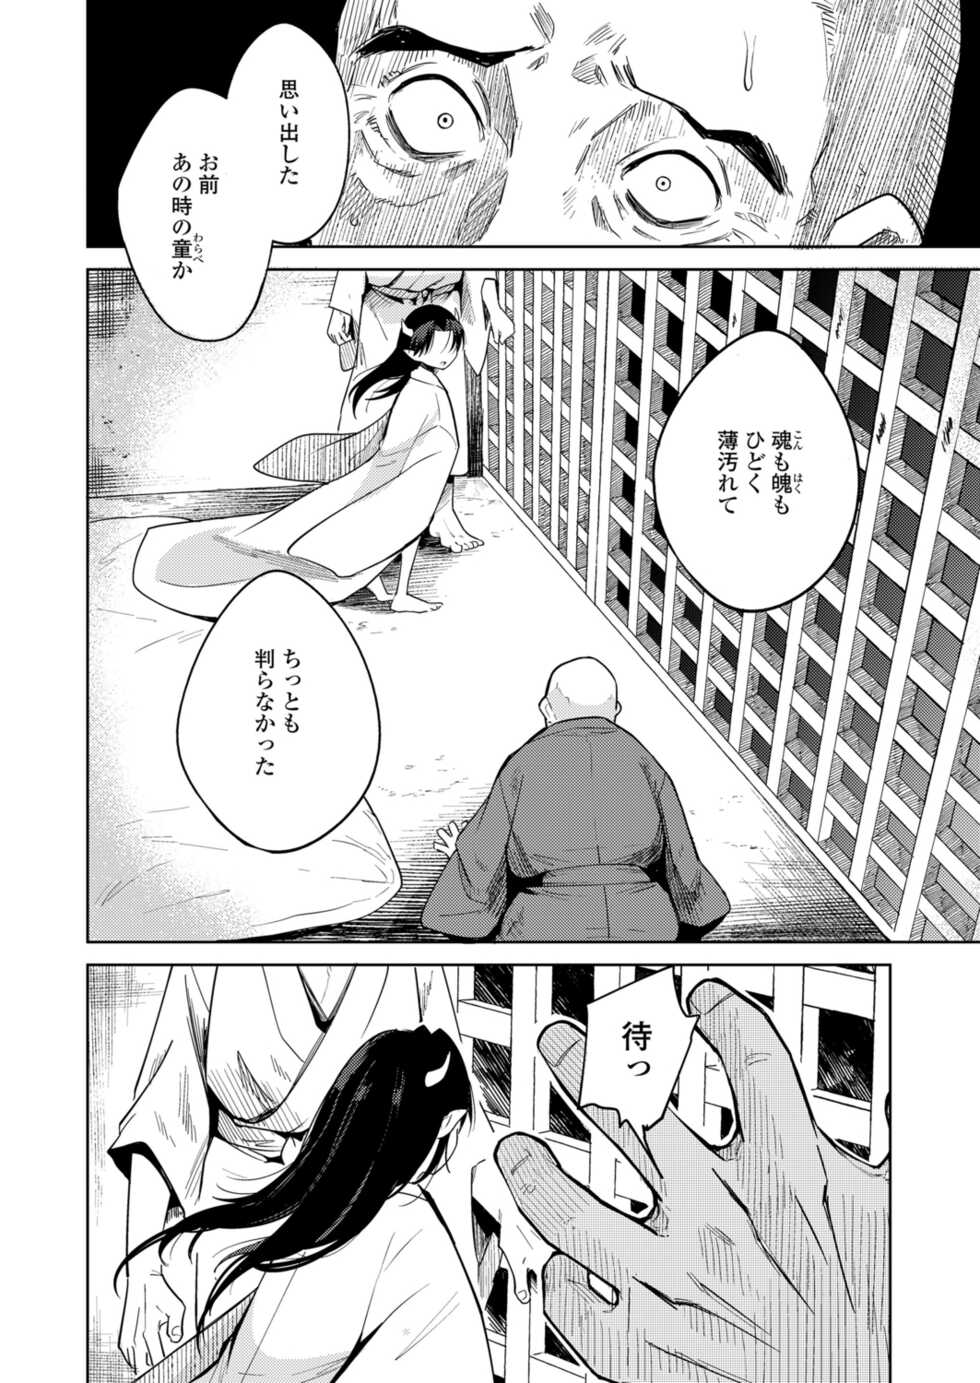 Towako 12 [Digital] - Page 32